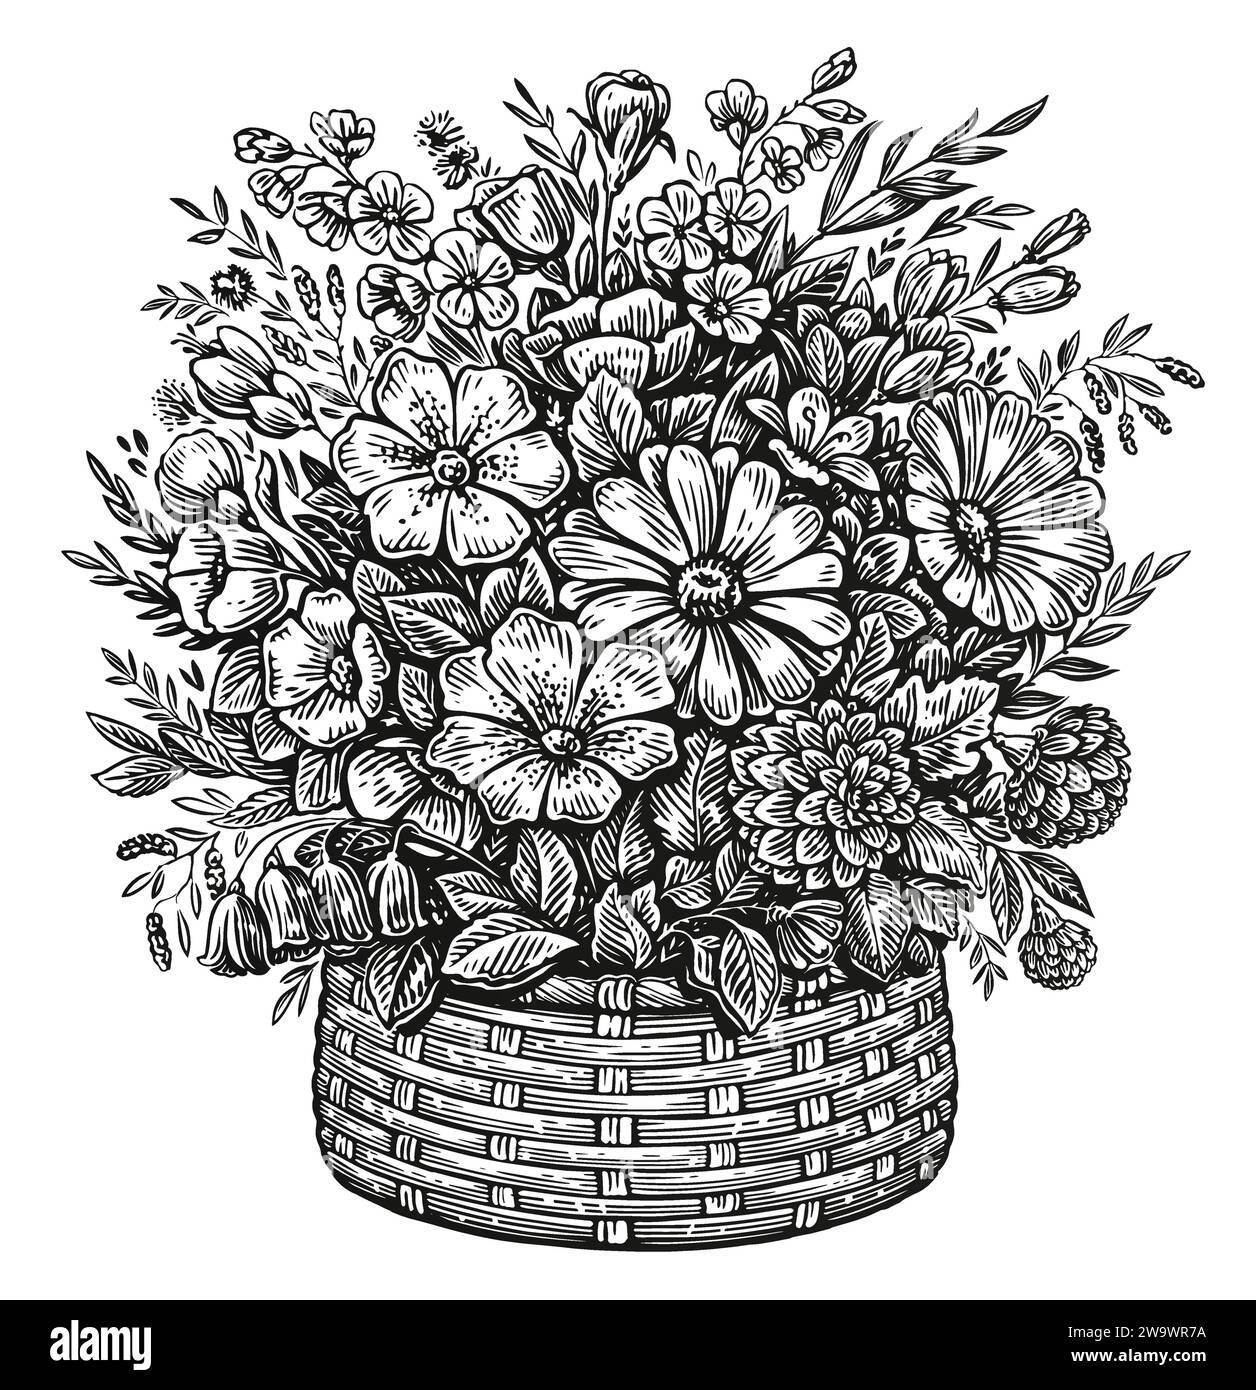 Illustration de croquis d'arrangement floral. Panier en osier dessiné à la main avec des fleurs sauvages dans le style de gravure vintage Illustration de Vecteur